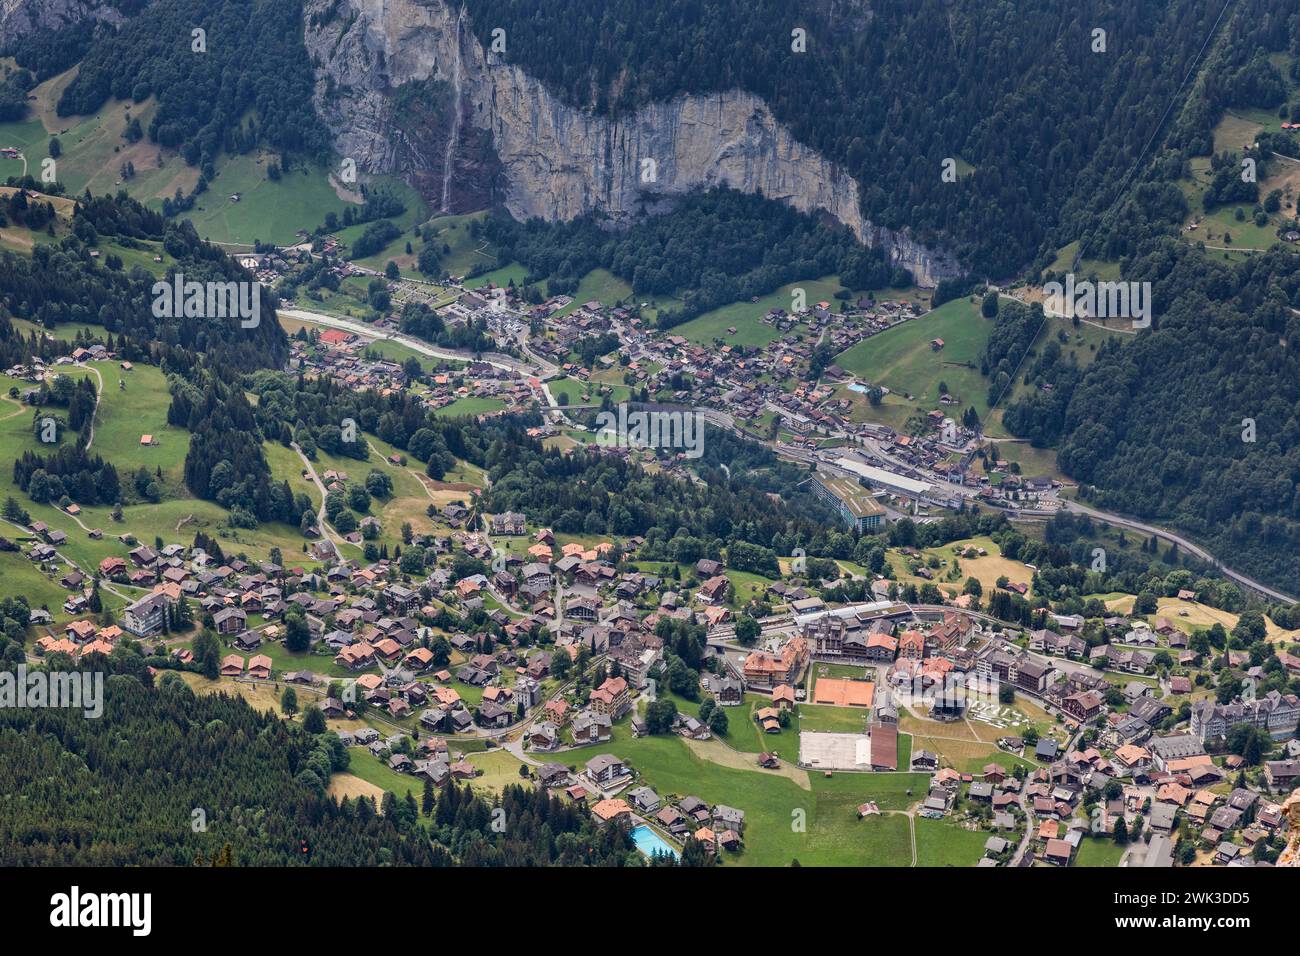 alto mirador de los pueblos de wengen y lauterbrunnen y la cascada de staubbach en el oberland bernés suiza Foto de stock